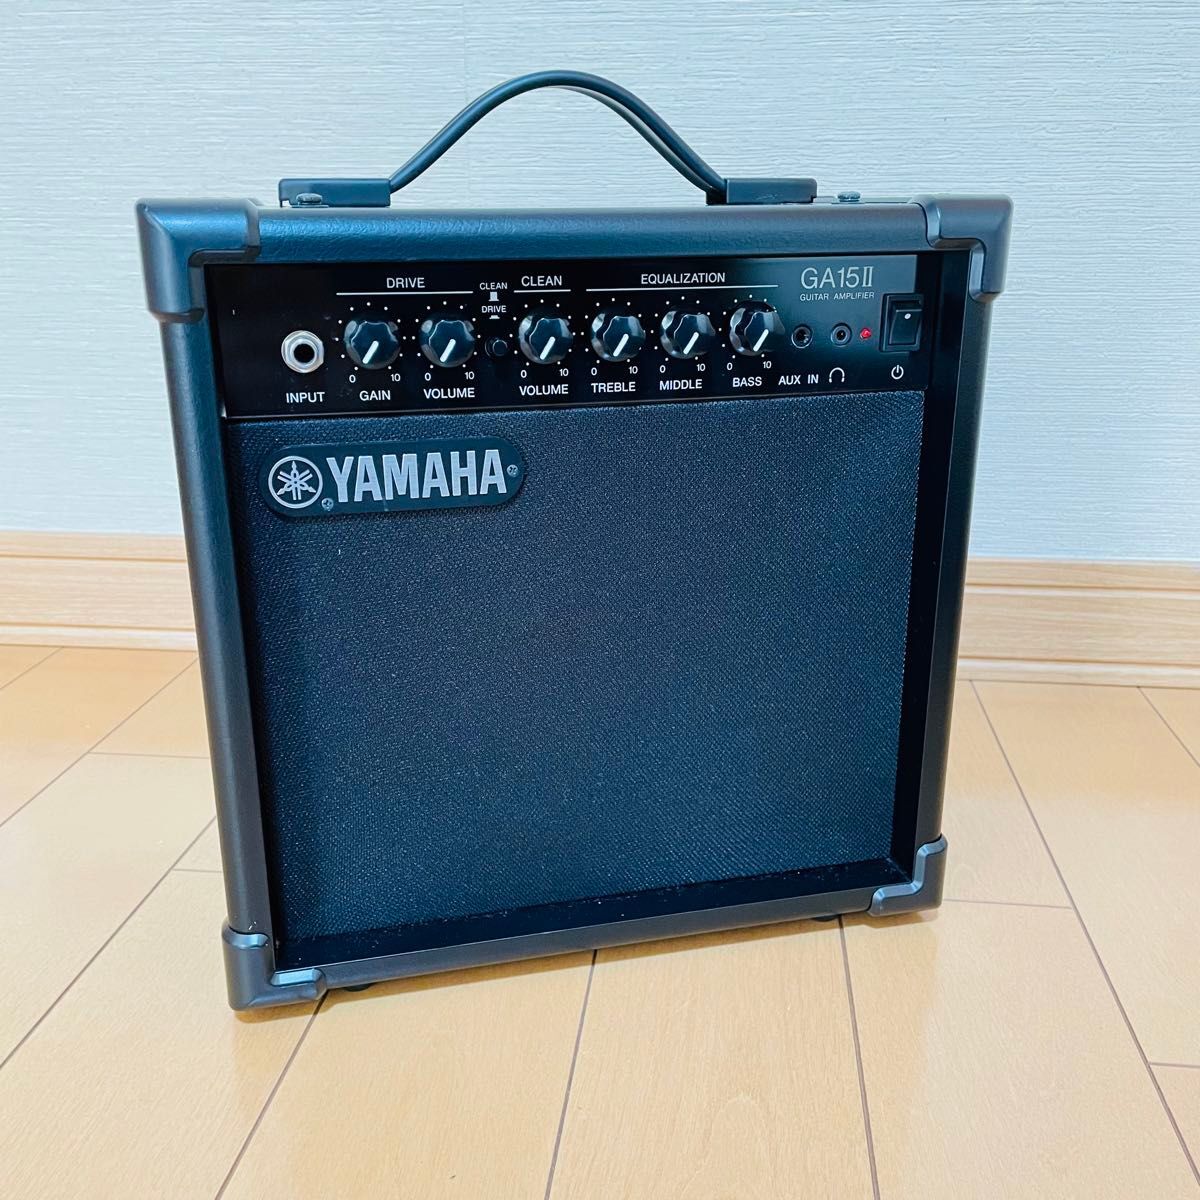 YAMAHA(ヤマハ) GA15Ⅱ ギターアンプ(amp)の画像1